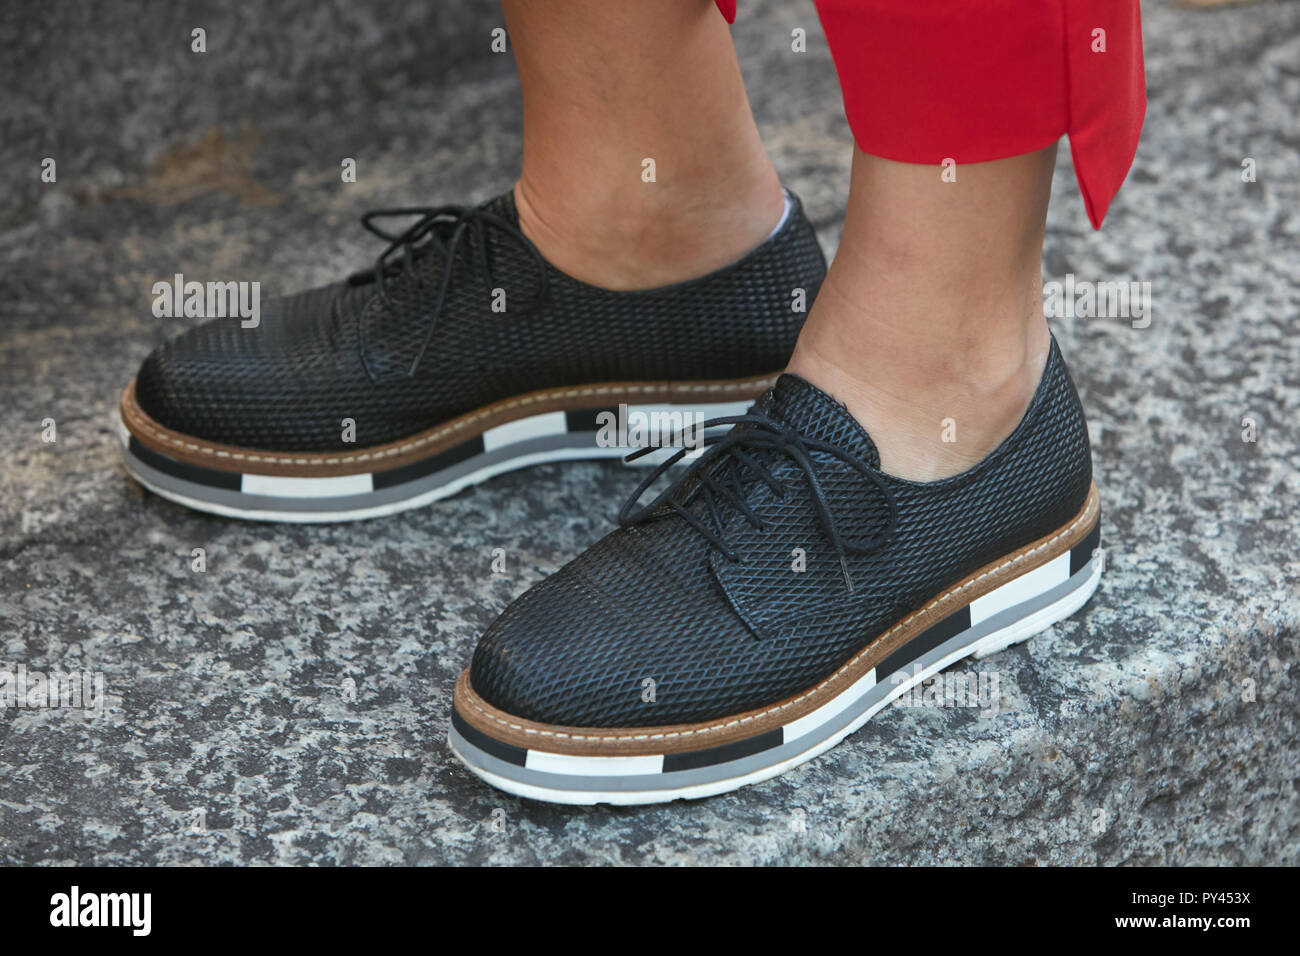 Milán, Italia - 23 de septiembre de 2018: zapatos negros con suela blanco y